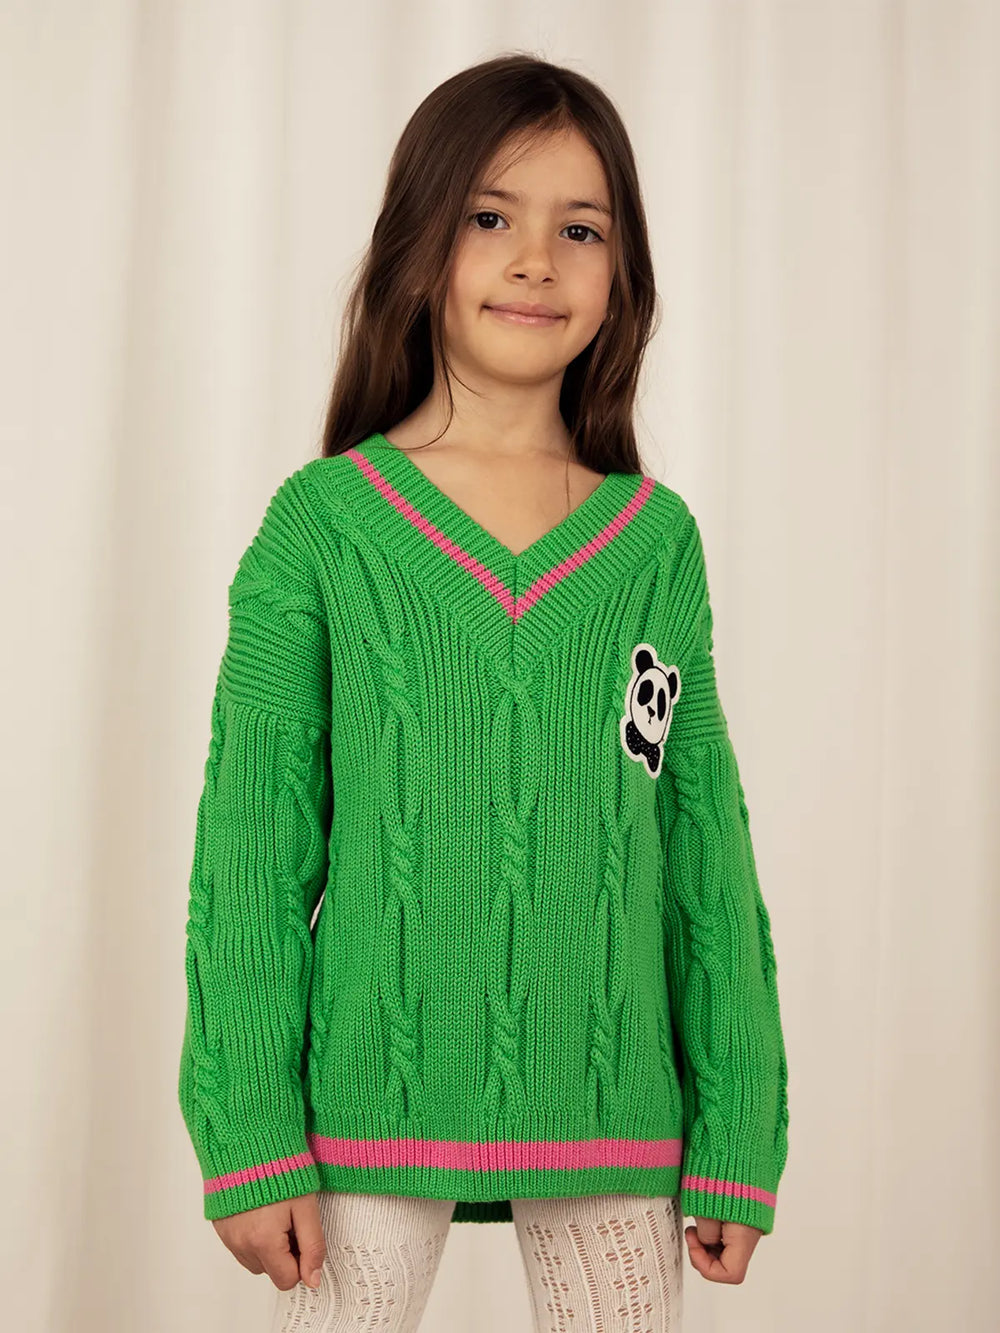 Panda Knitted VNeck Sweater by Mini Rodini